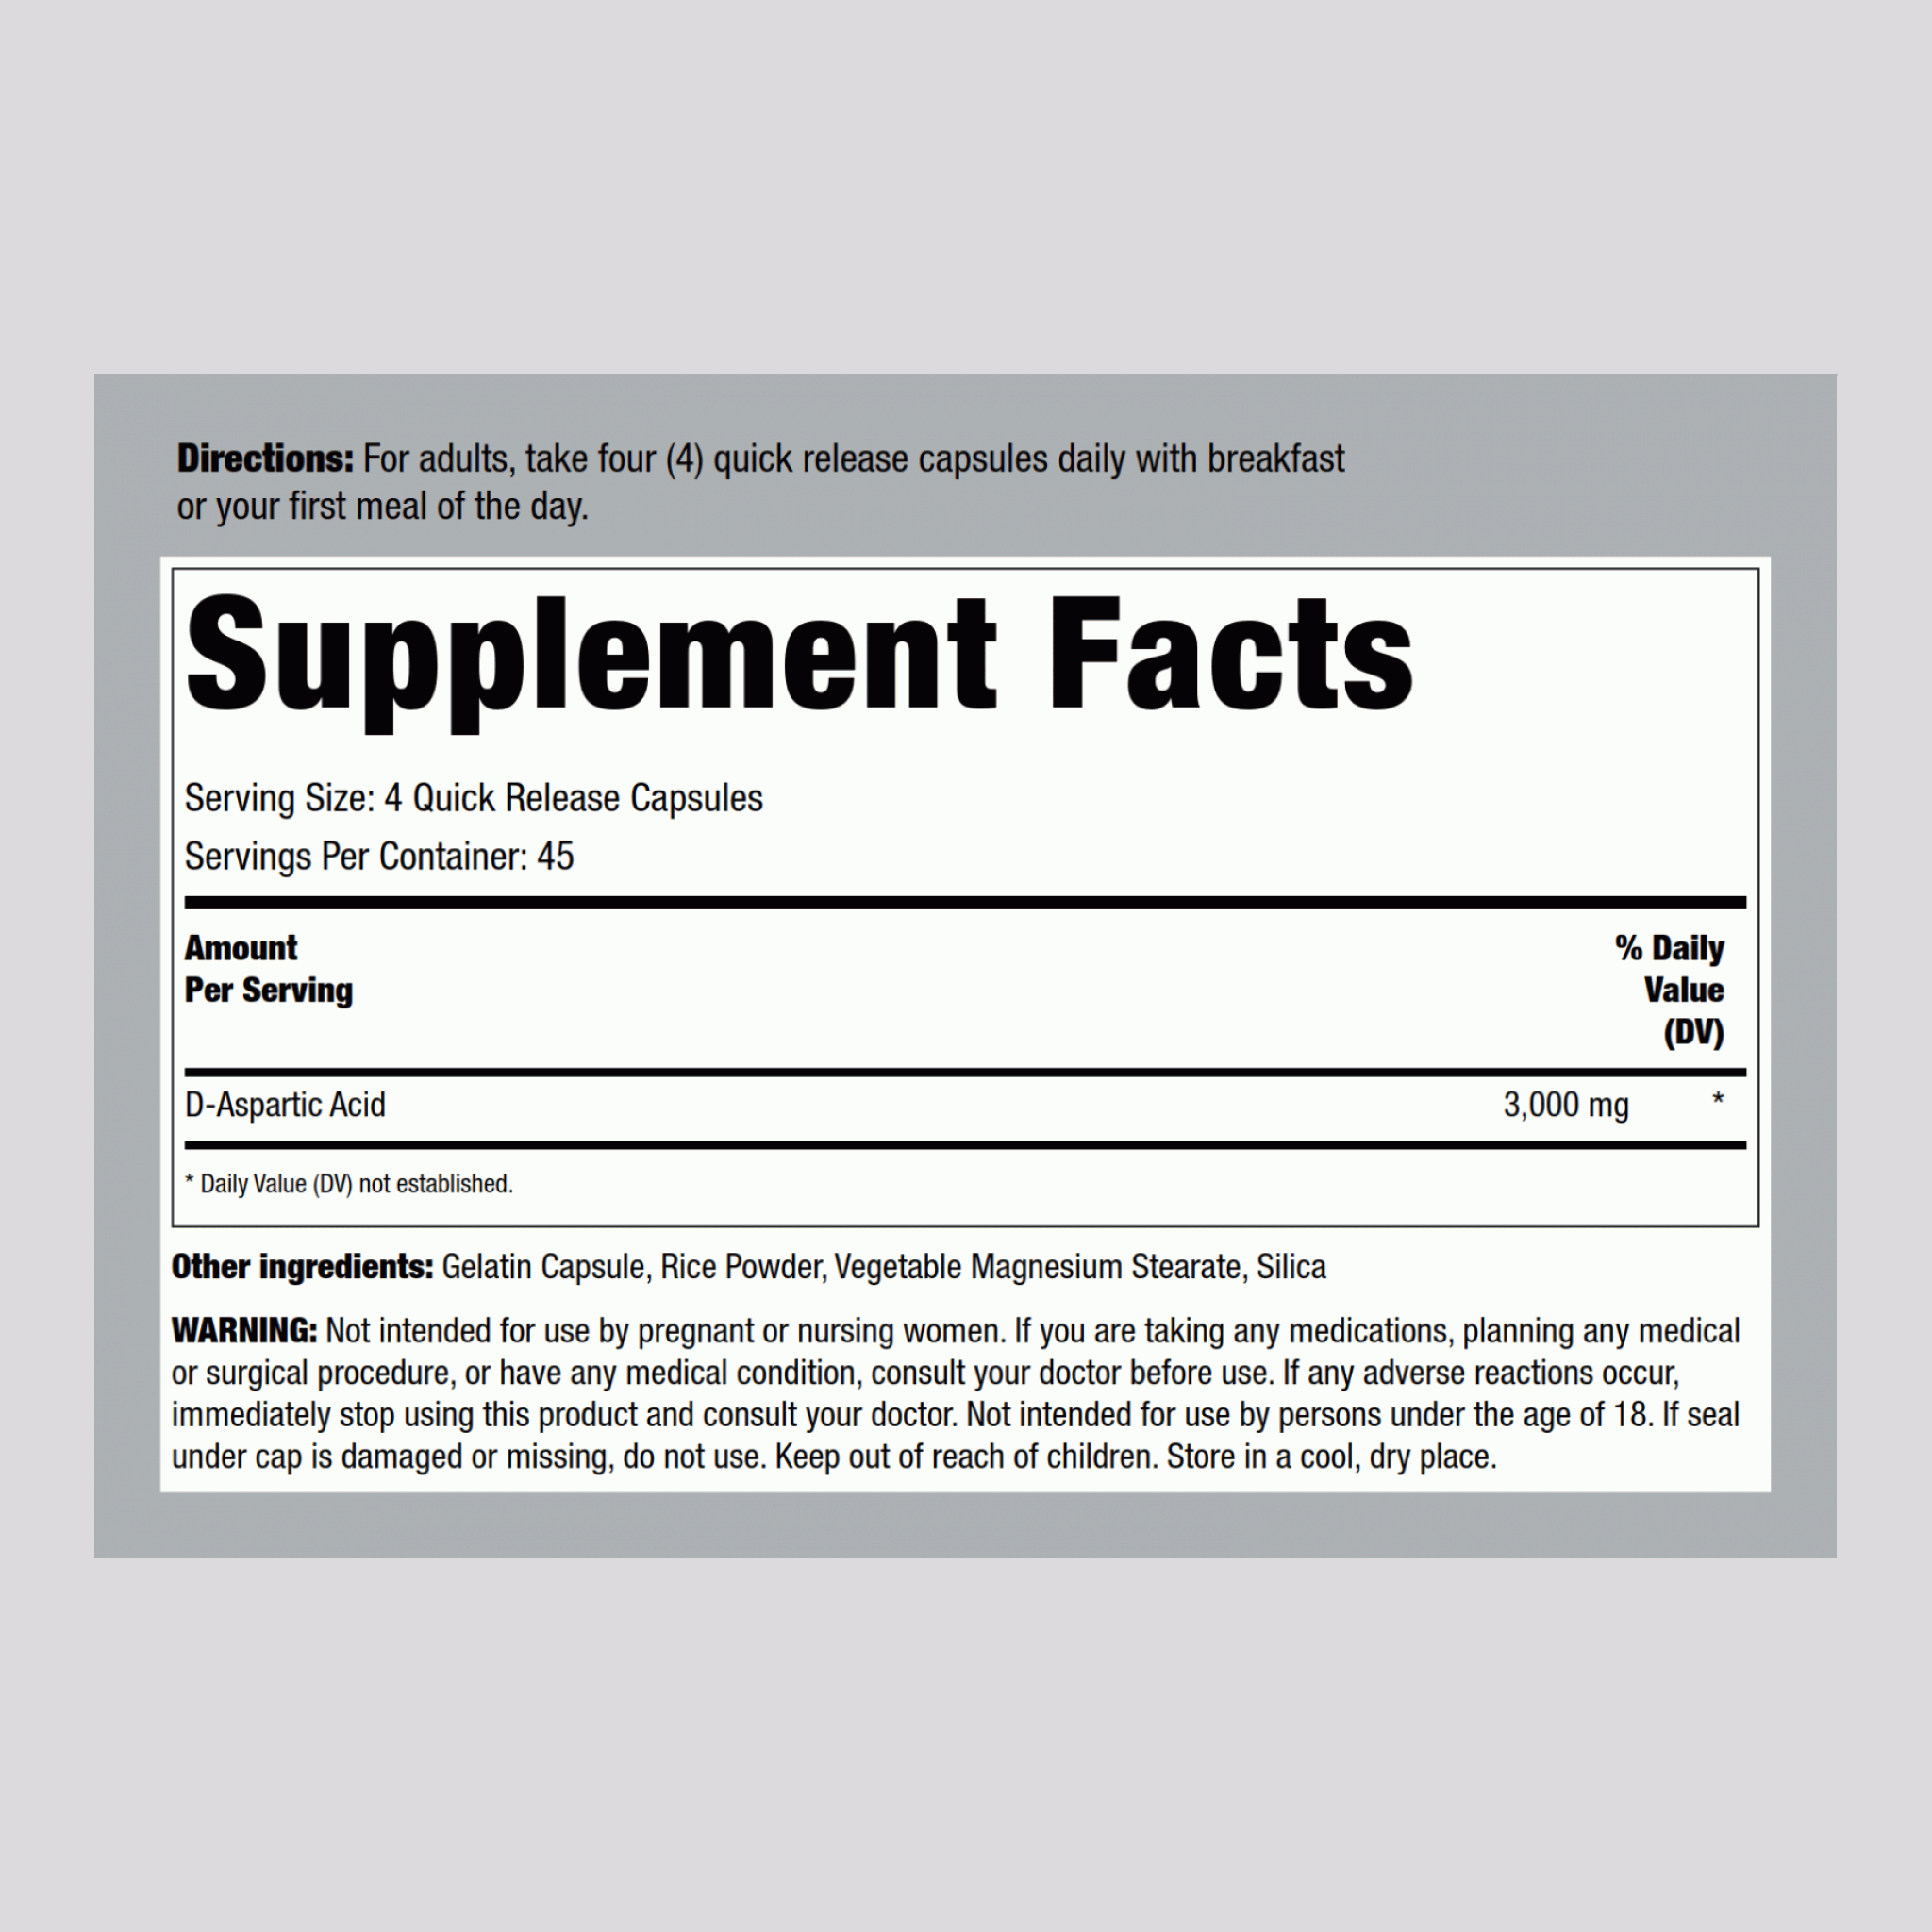 D-Aspartic Acid, 3000 mg (per serving), 180 Quick Release Capsules